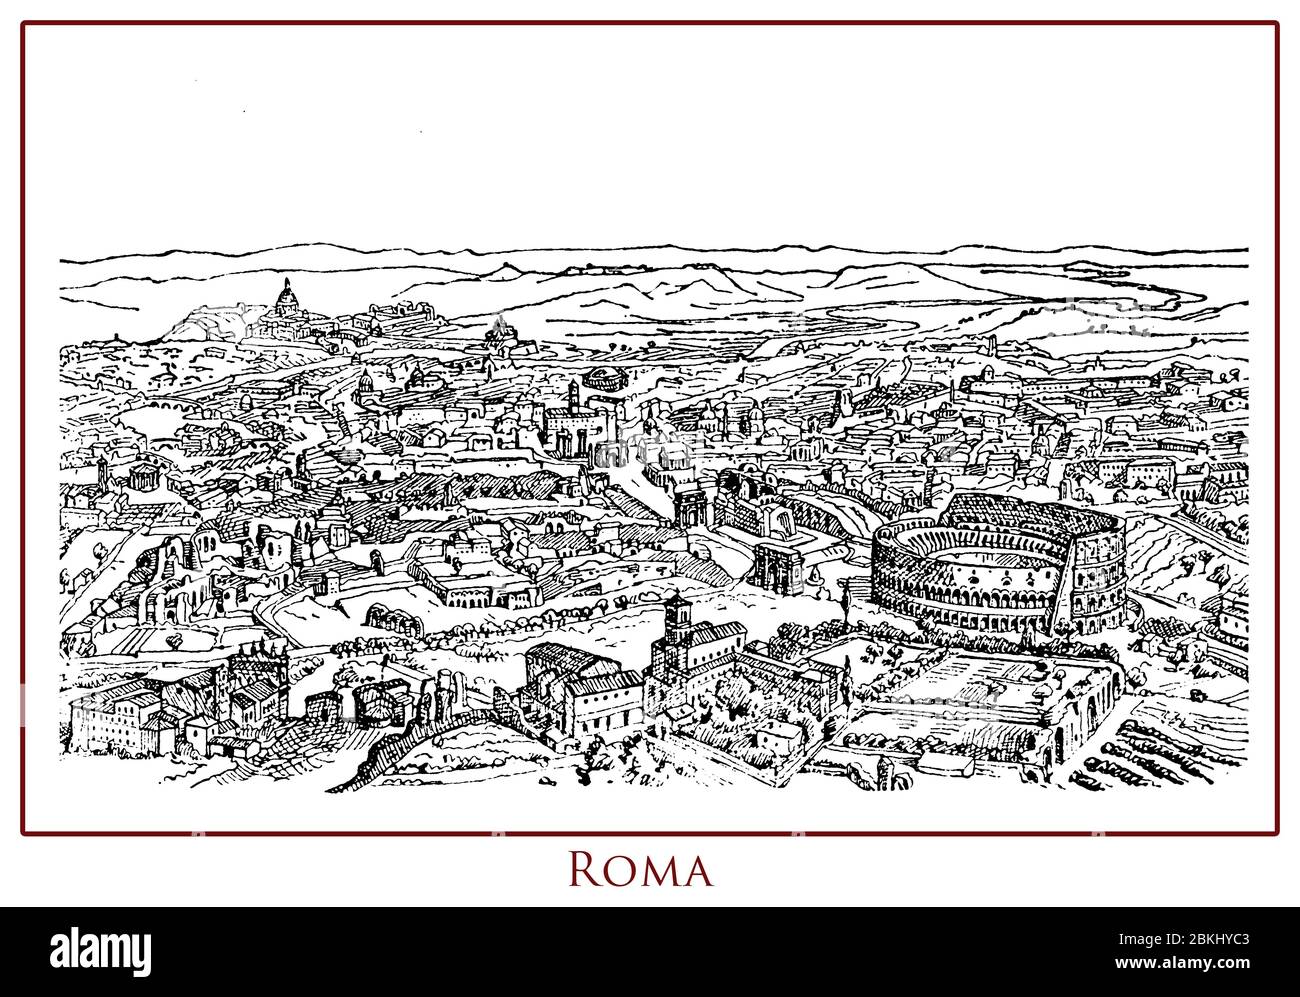 Table d'époque illustrée avec vue panoramique sur la ville de Rome capitale de l'Italie située sur les rives du Tibre, riche d'histoire, d'architecture, d'art et de monuments anciens comme le Colisée Banque D'Images